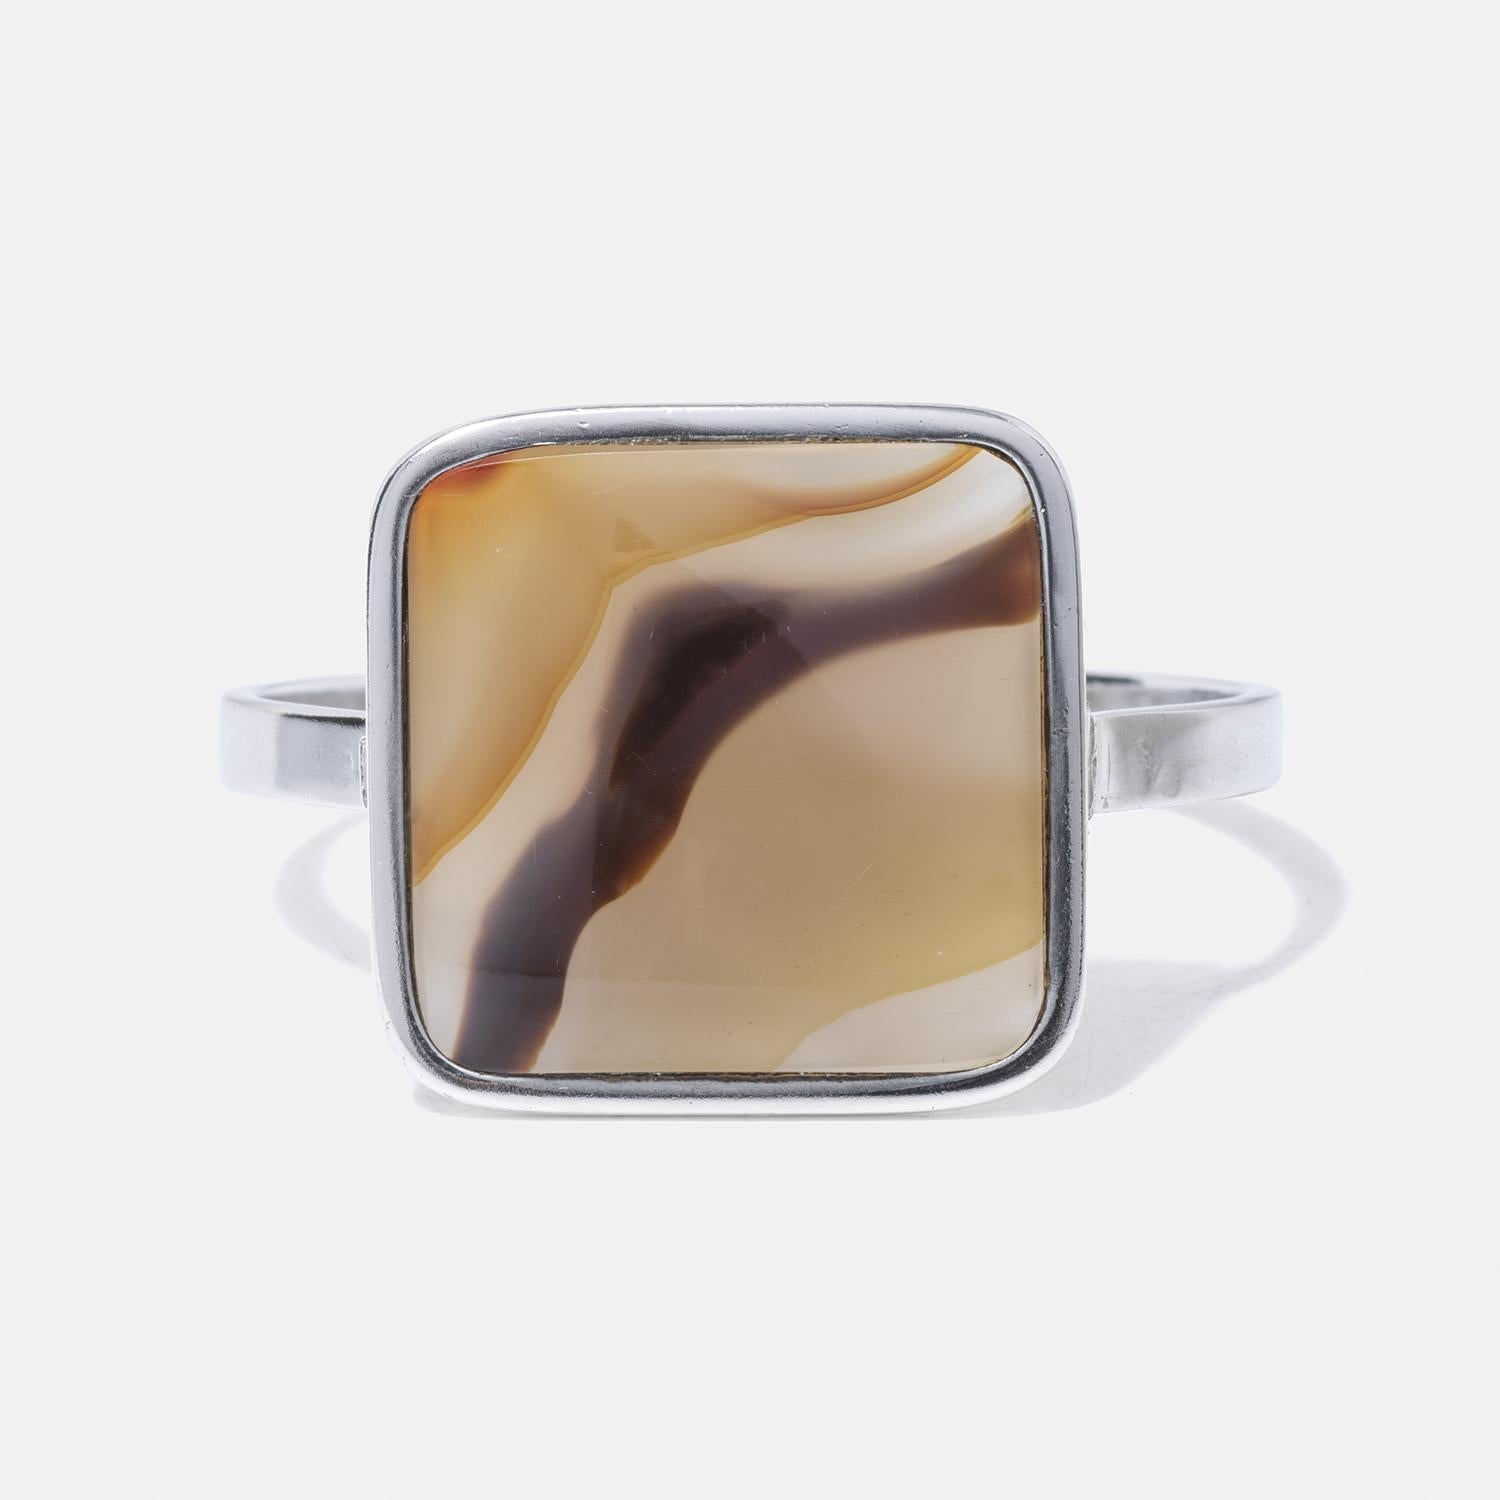 Dieses elegante Armband zeigt einen quadratischen Tigerauge-Stein, der in Sterlingsilber gefasst ist und dessen faszinierende Schattierungen von Goldbraun, Beige und dunklen Streifen sich im Licht verändern. Das Band ist schön dünn, betont den Stein